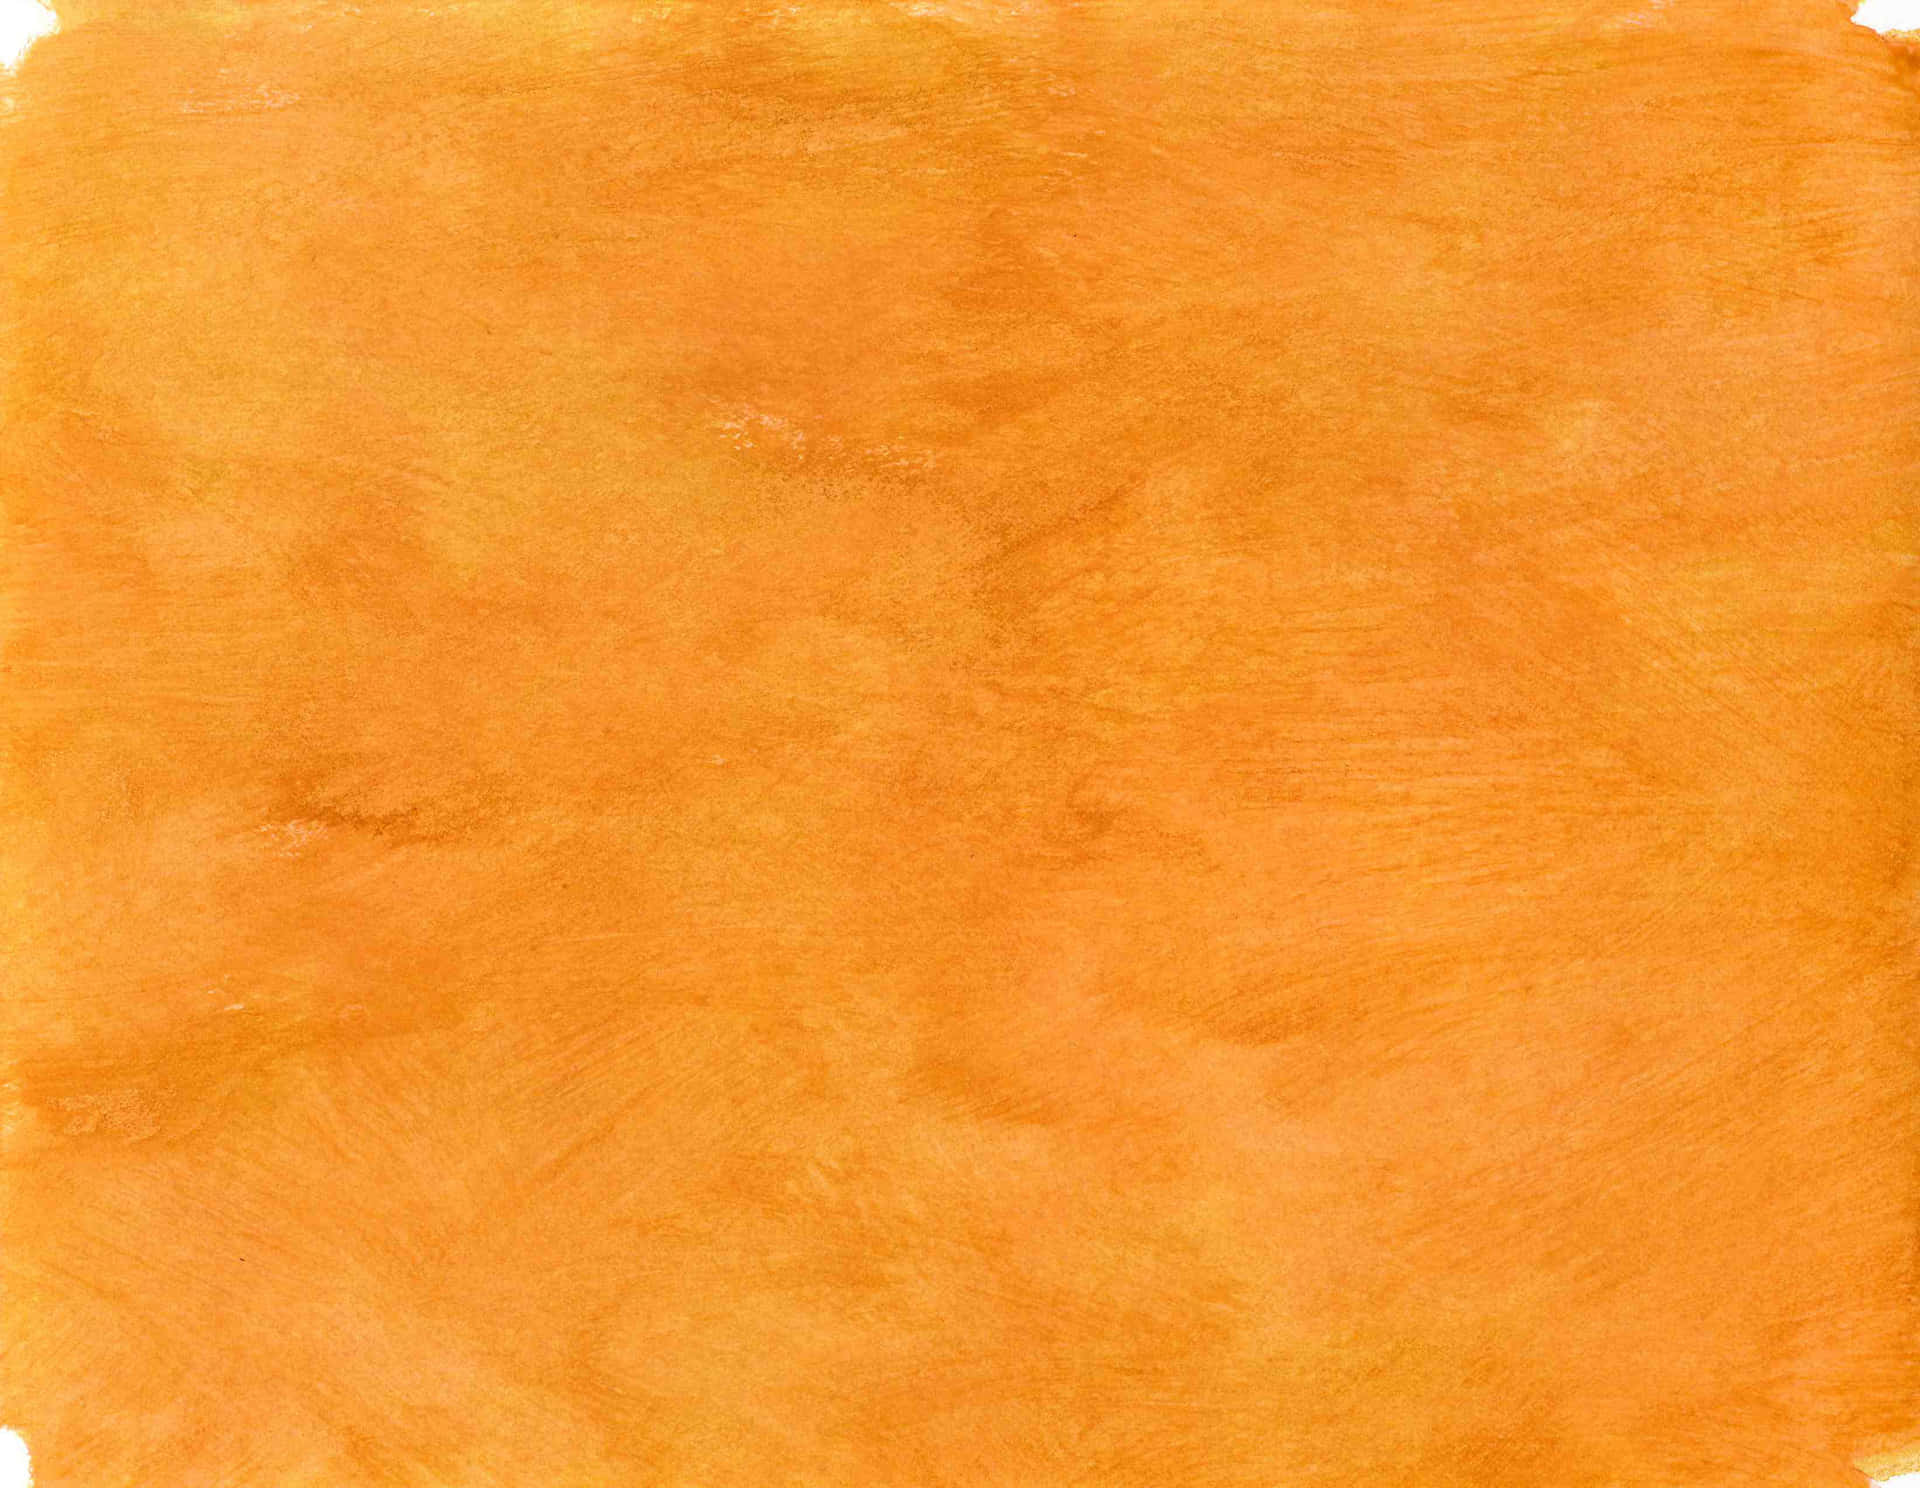 Livfullbakgrund I Bränd Orange Färg.